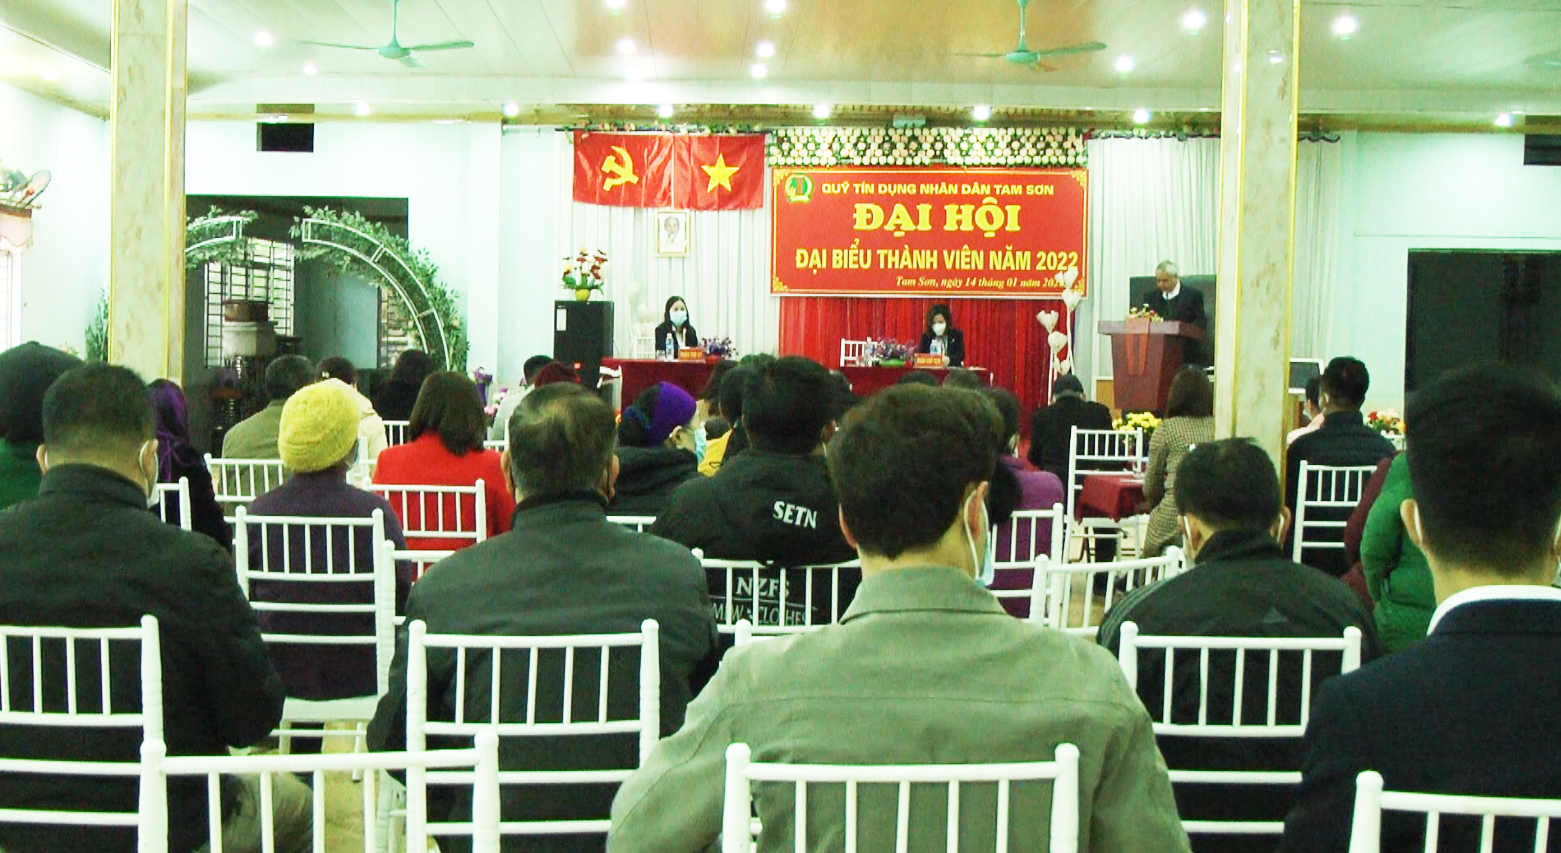 Quản Bạ: Đại hội đại biểu thành viên Quỹ tín dụng nhân dân Tam Sơn năm 2022.